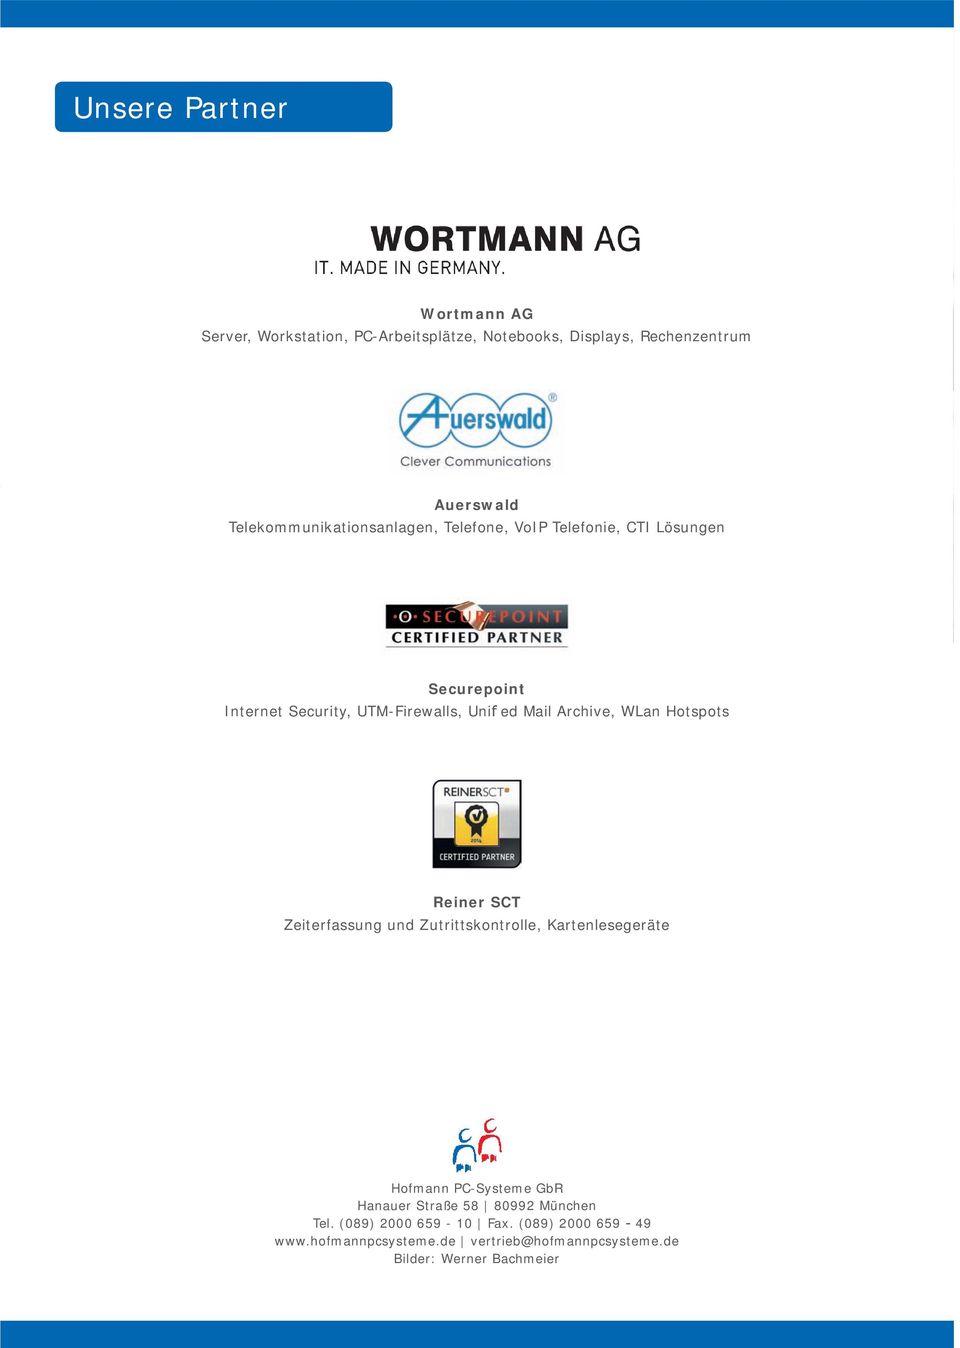 Archive, WLan Hotspots Reiner SCT Zeiterfassung und Zutrittskontrolle, Kartenlesegeräte Hofmann PC-Systeme GbR Hanauer Straße